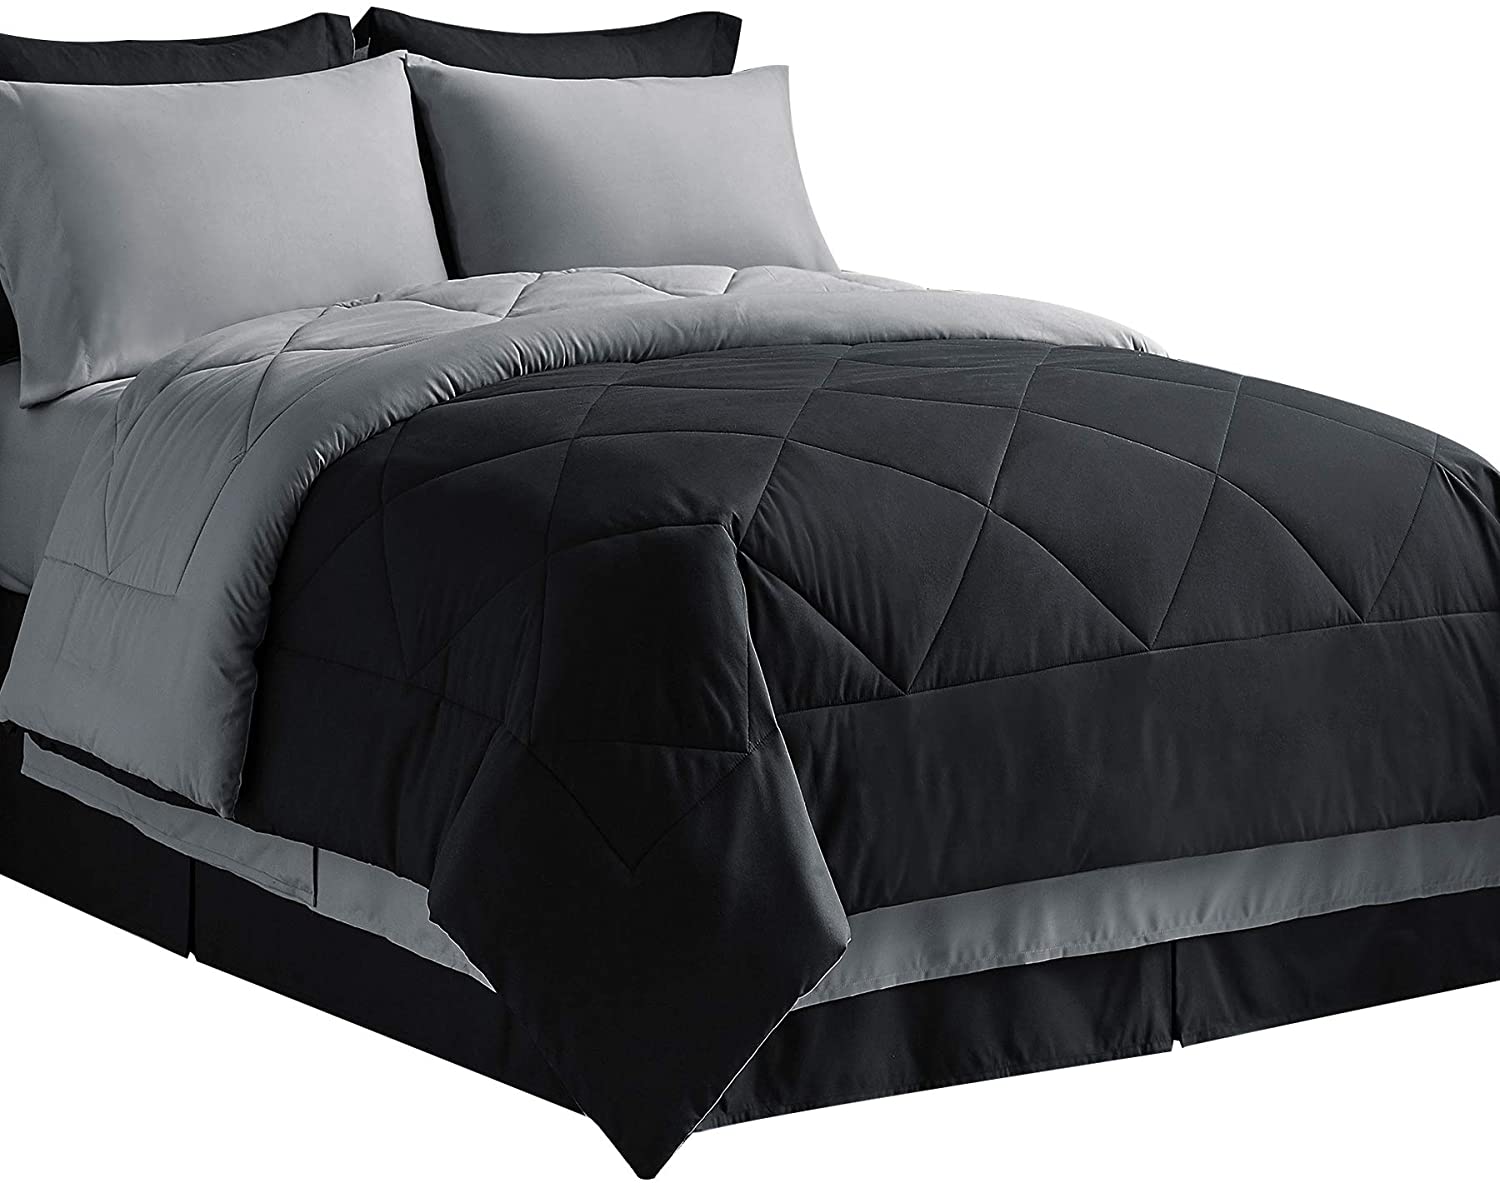 Bedsure Bed In A Bag Comforter Sets, Grey King Bed Comforter Sets